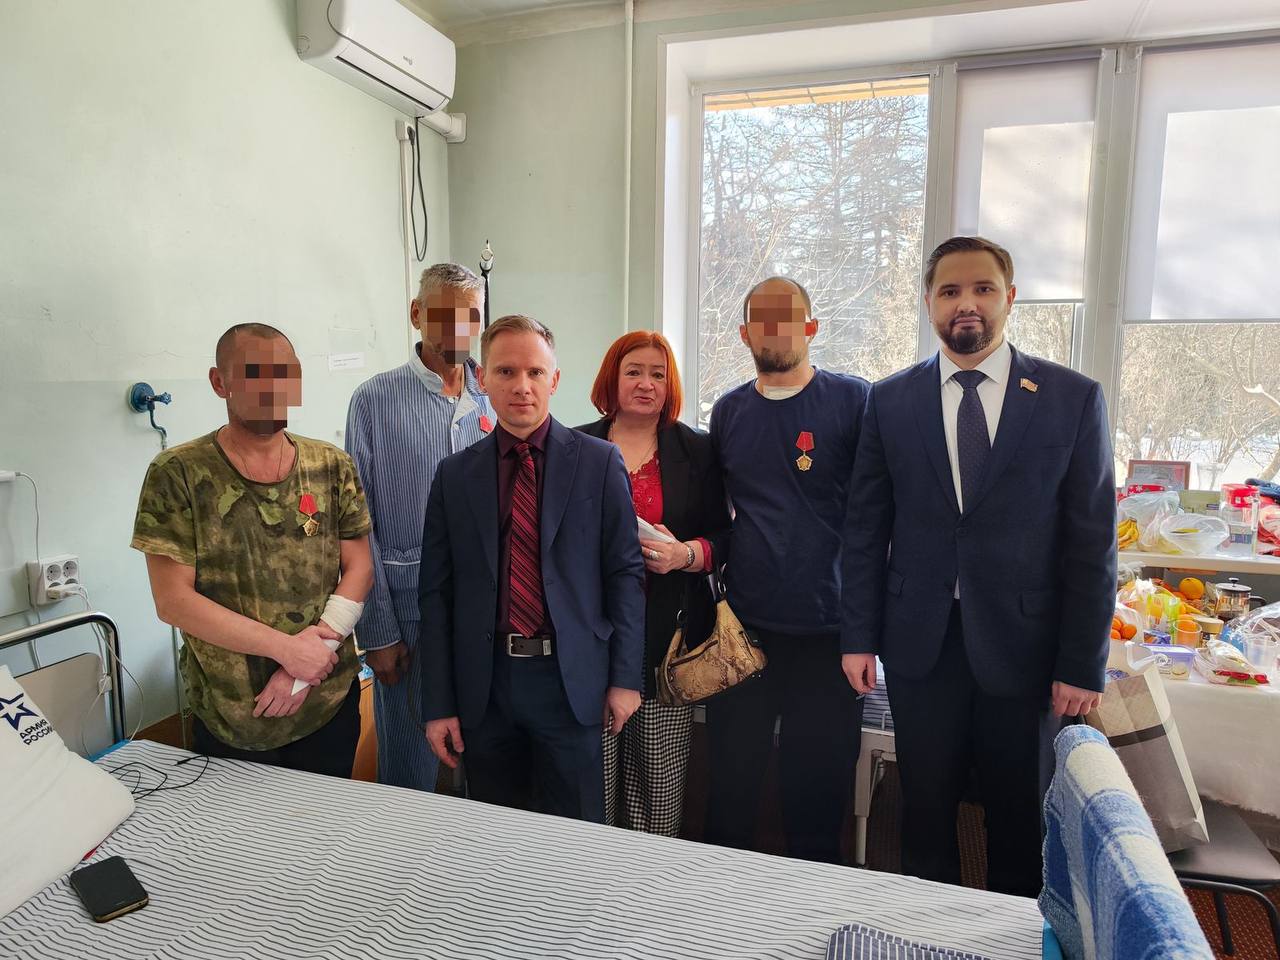 Накануне Дня защитника отечества посетили Главный военный клинический госпиталь им. Н.Н. Бурденко, где проходят лечение участники СВО.